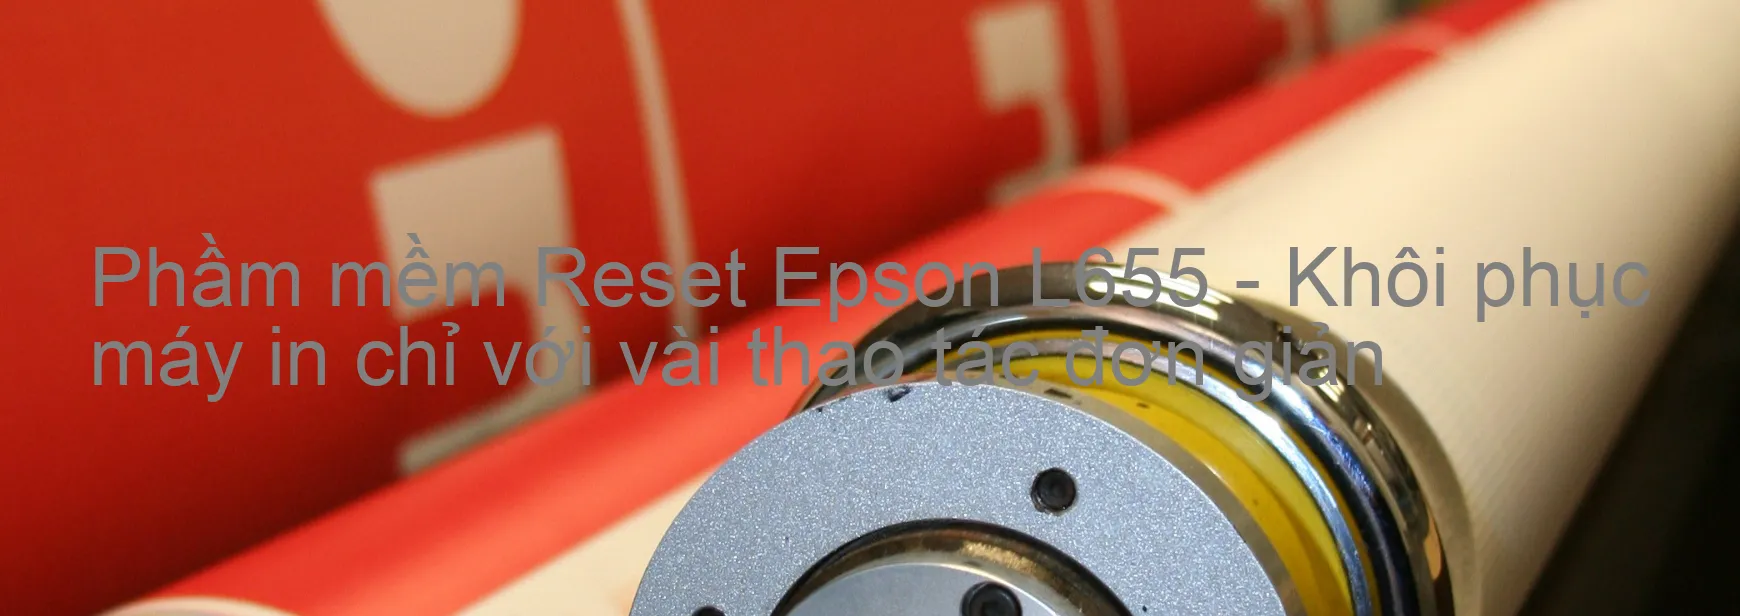 Phầm mềm Reset Epson L655 - Khôi phục máy in chỉ với vài thao tác đơn giản